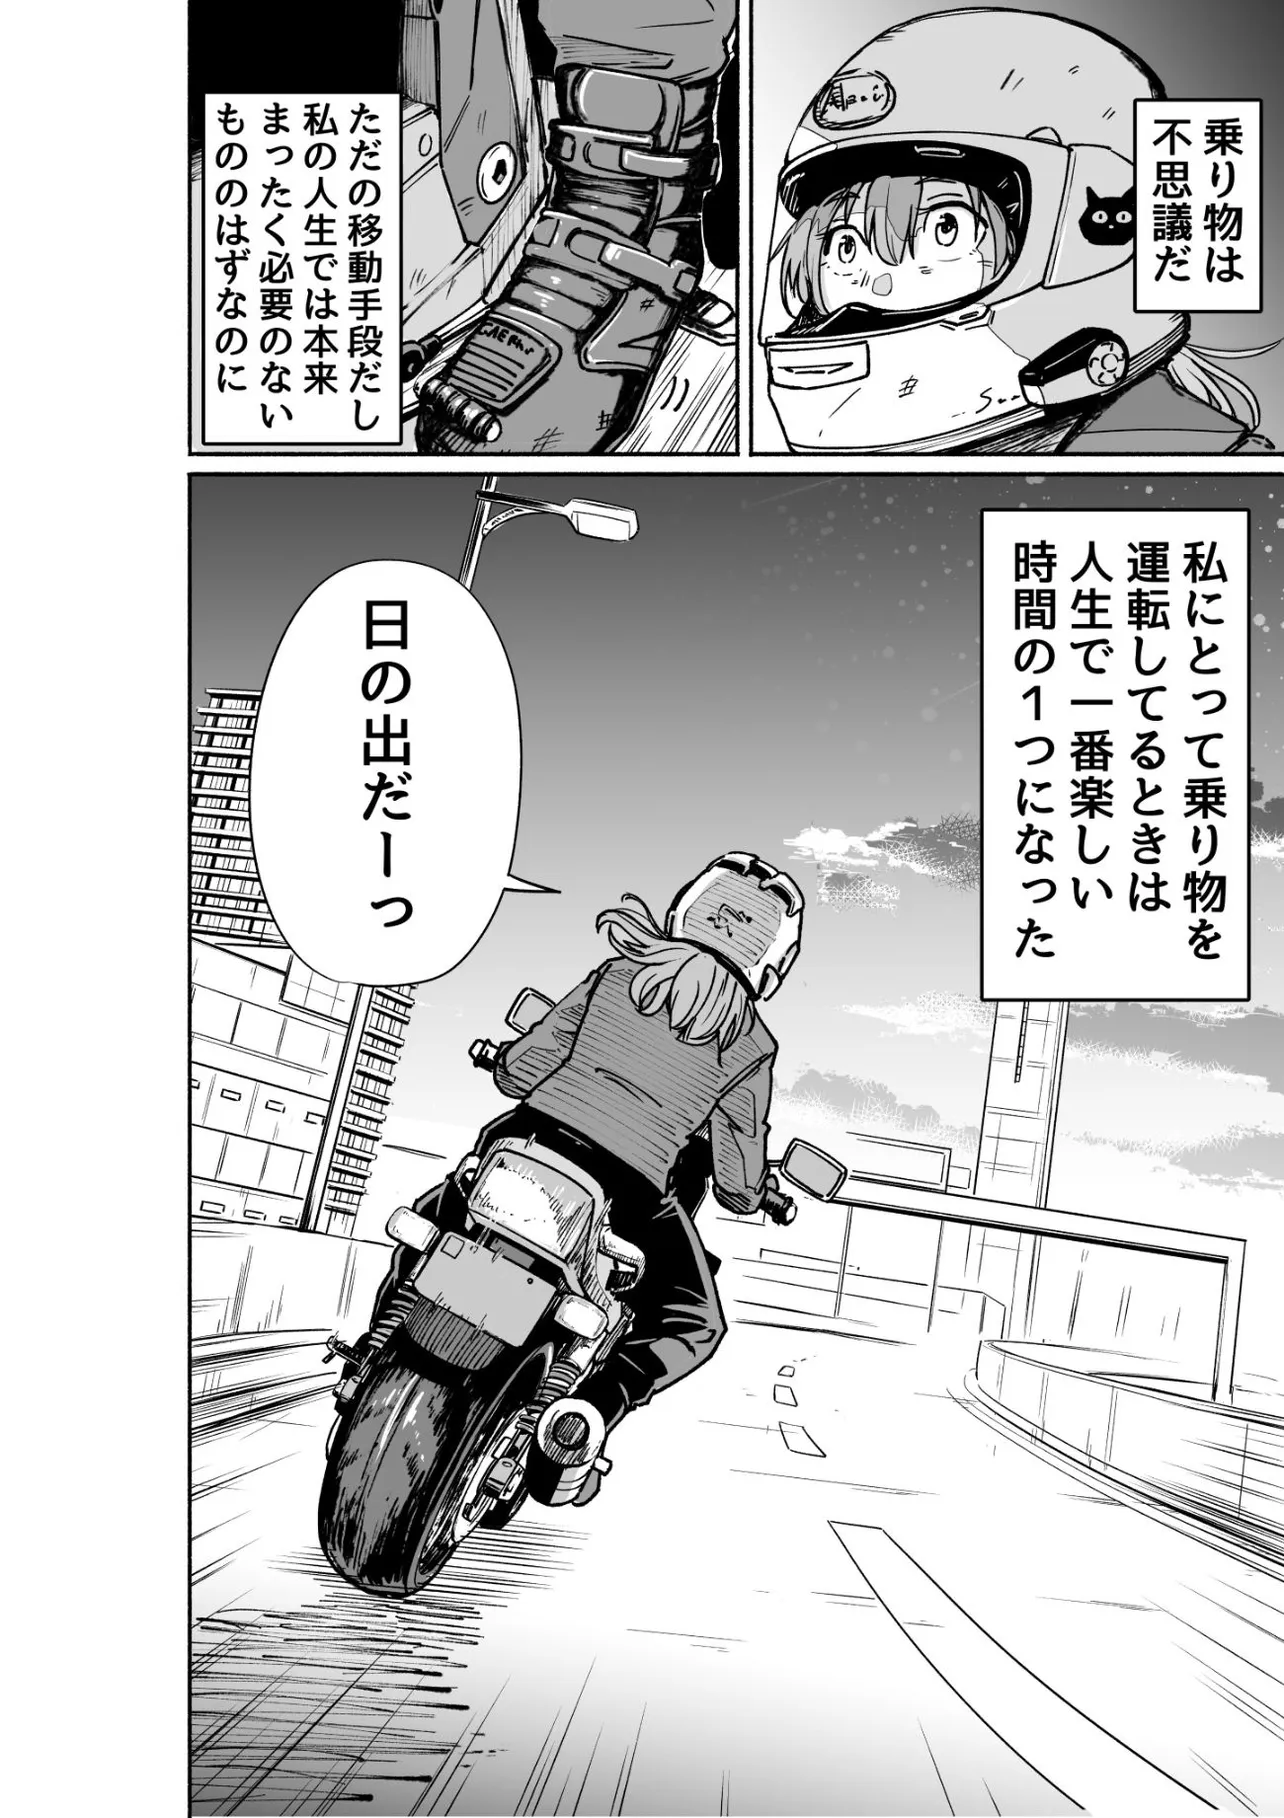 『バイクの話』(6／7)